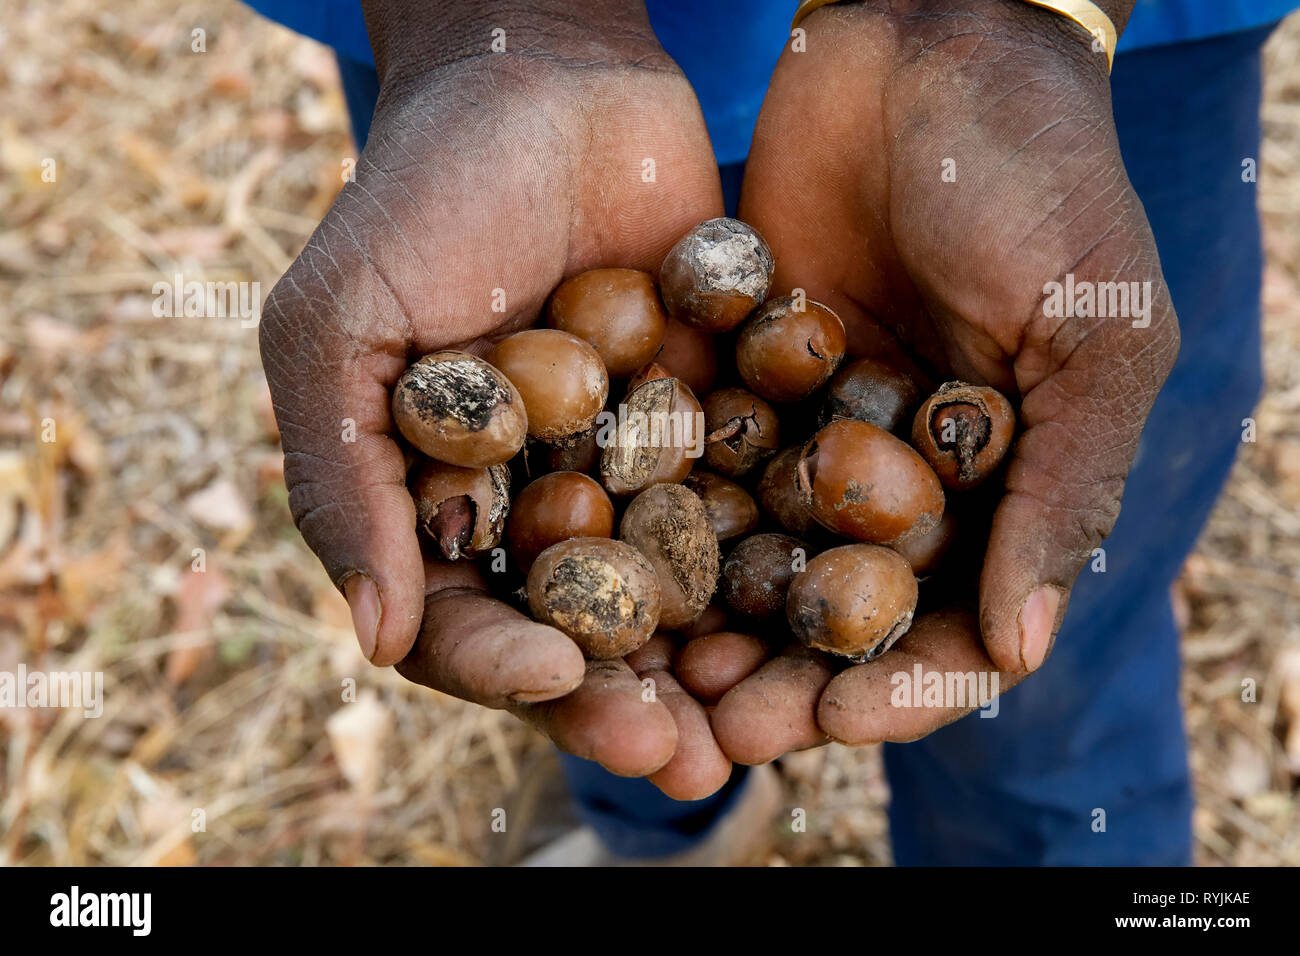 Man holding shea nuts in Ouahigouya, Burkina Faso. Stock Photo